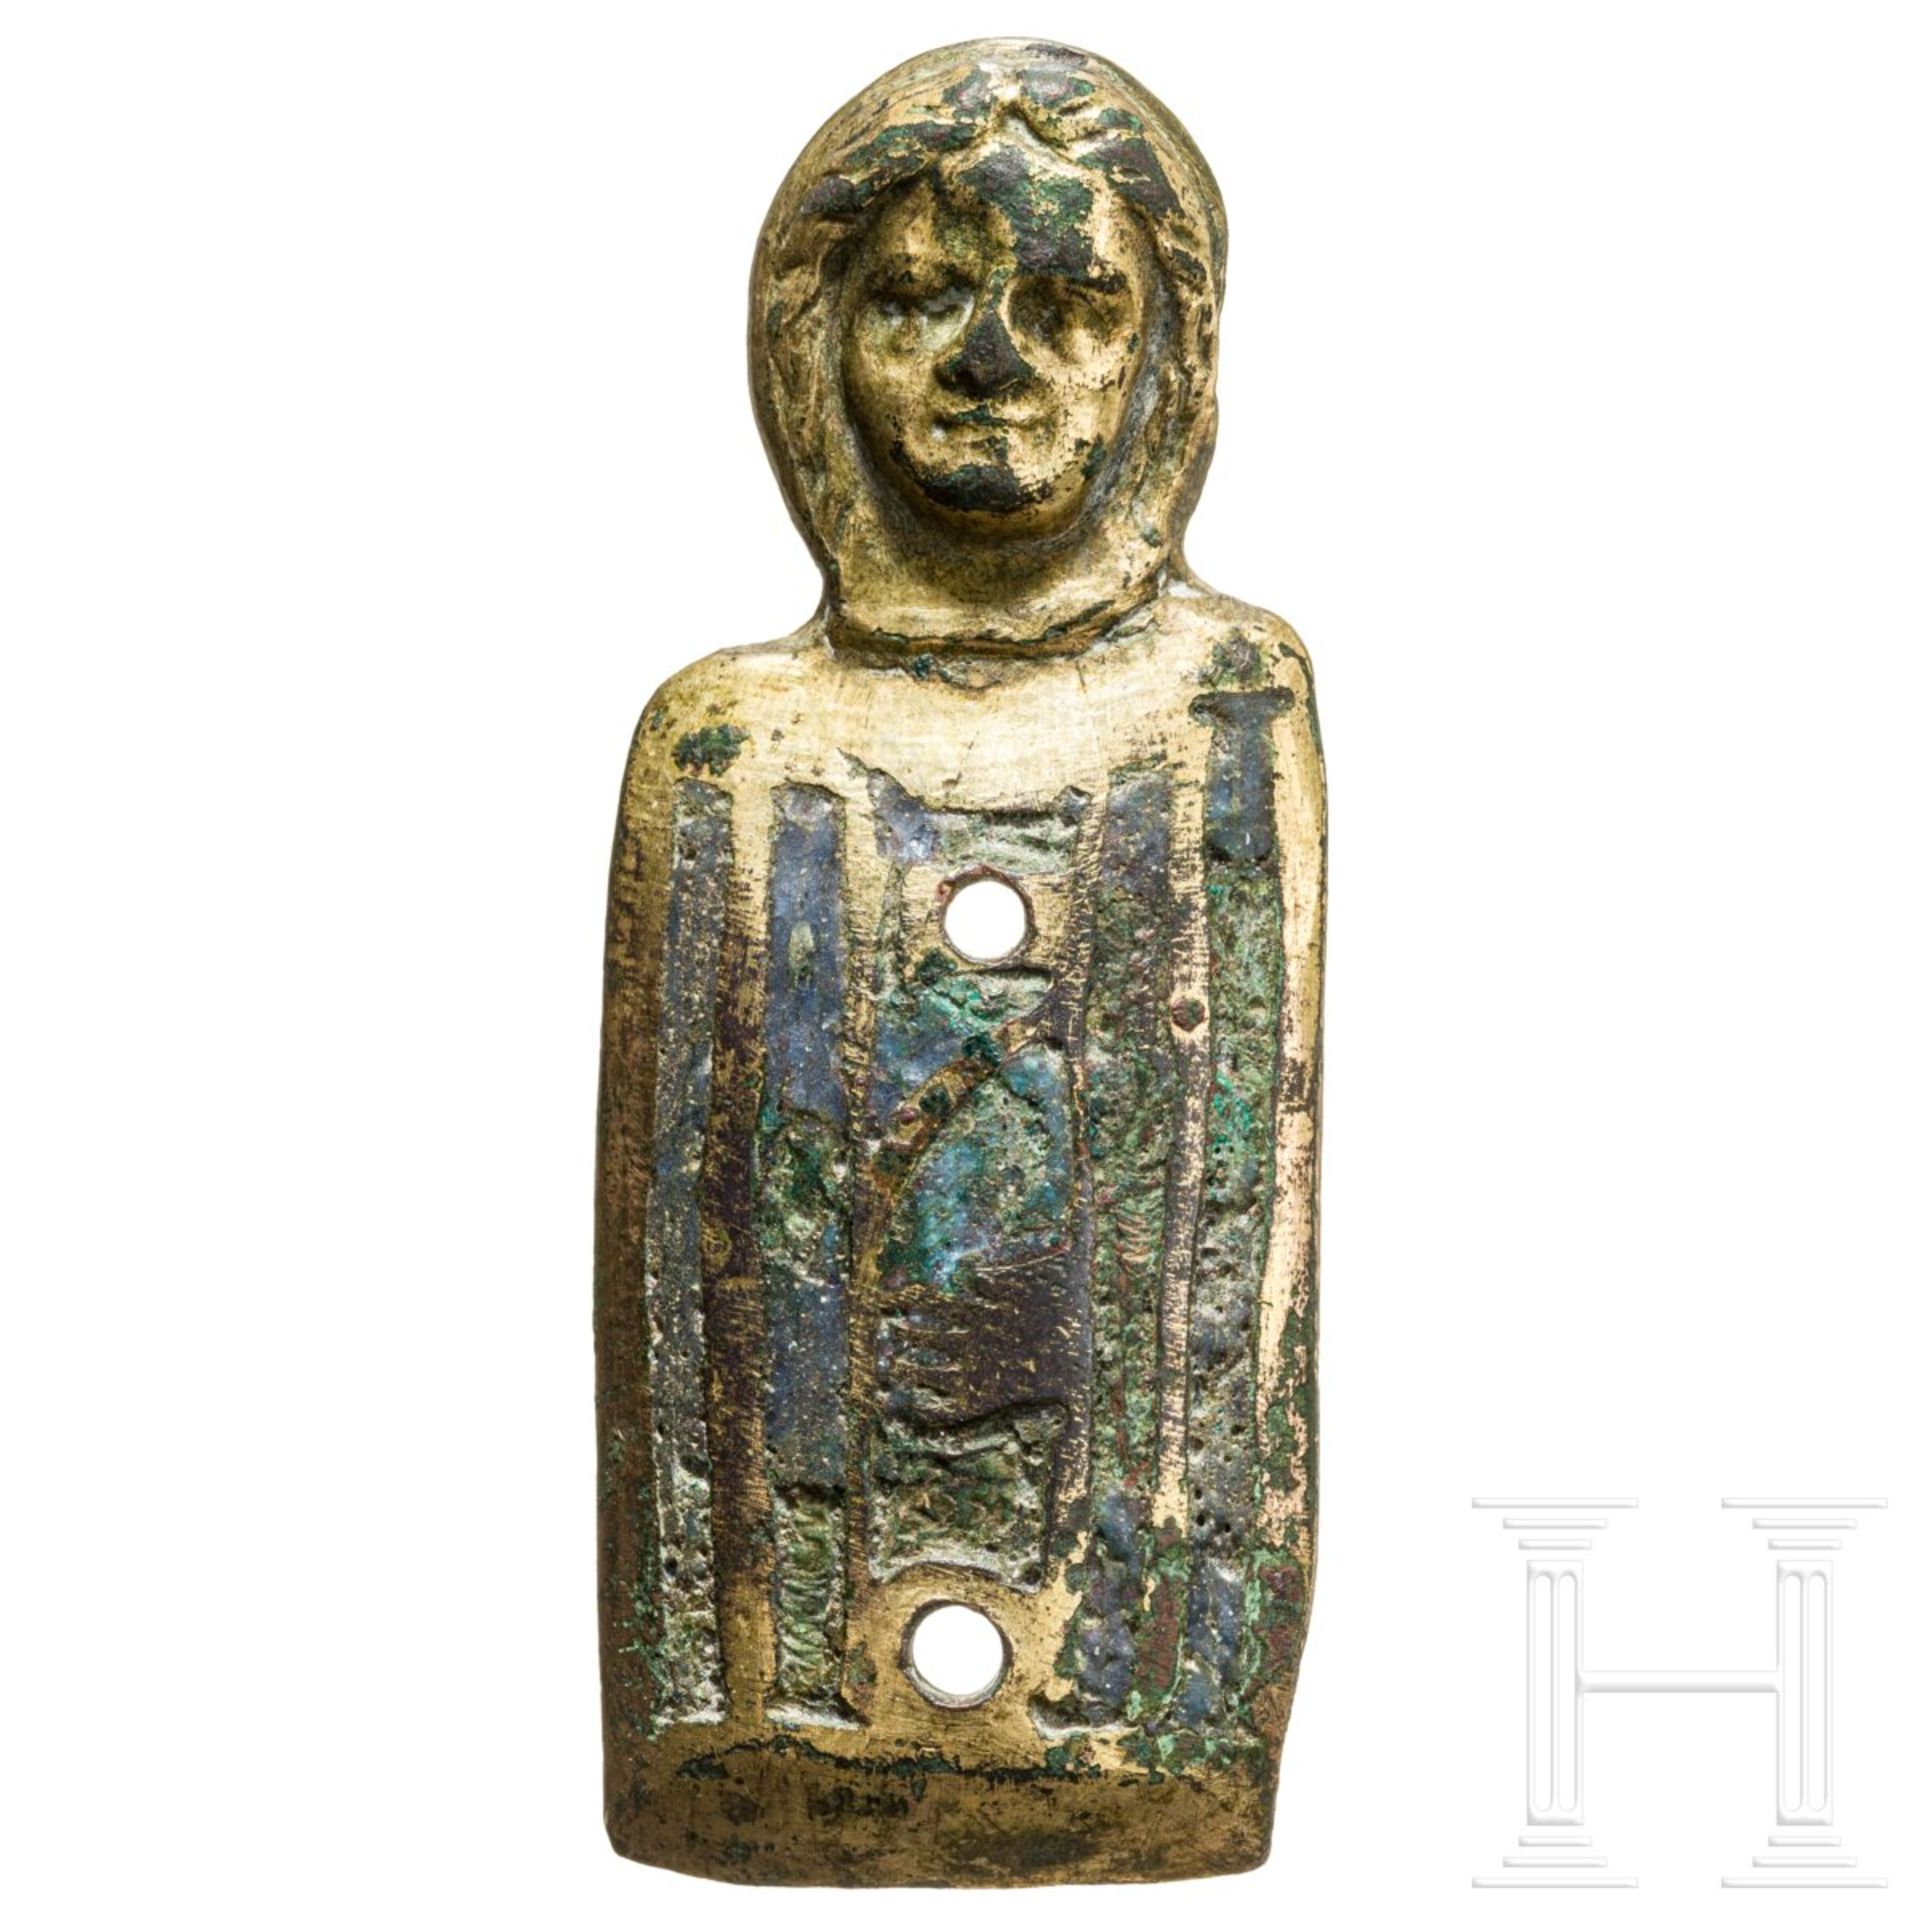 Vergoldete Heiligenbüste mit Emailleeinlagen, Limoges, 13./14. Jhdt. - Bild 2 aus 4